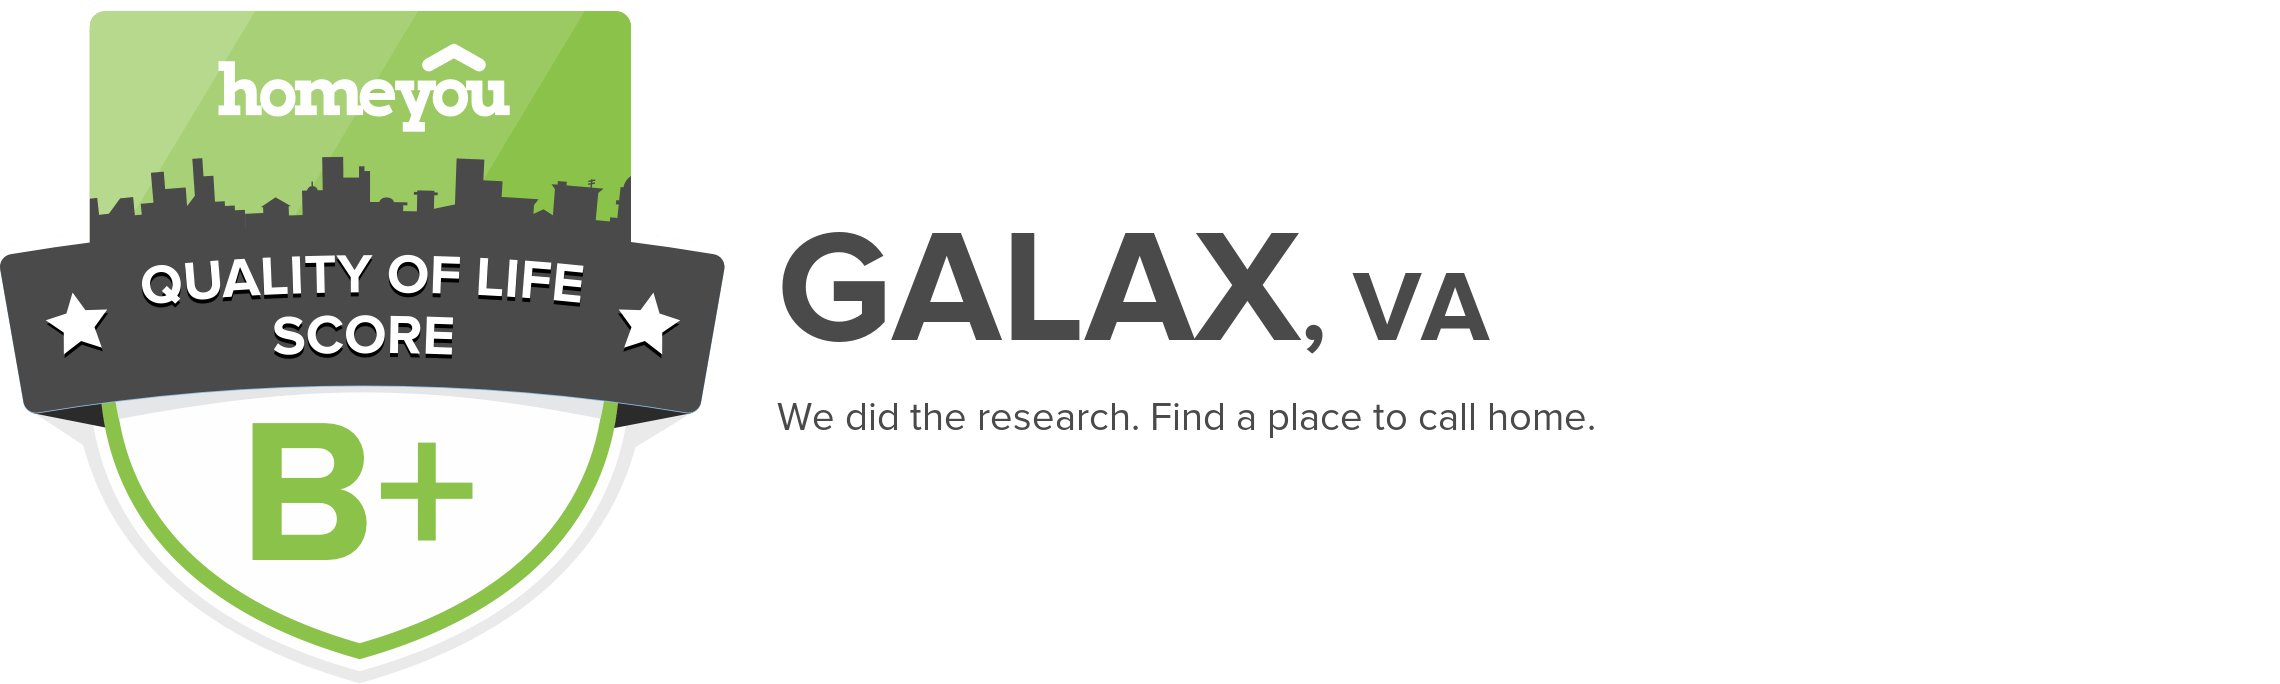 Galax, VA